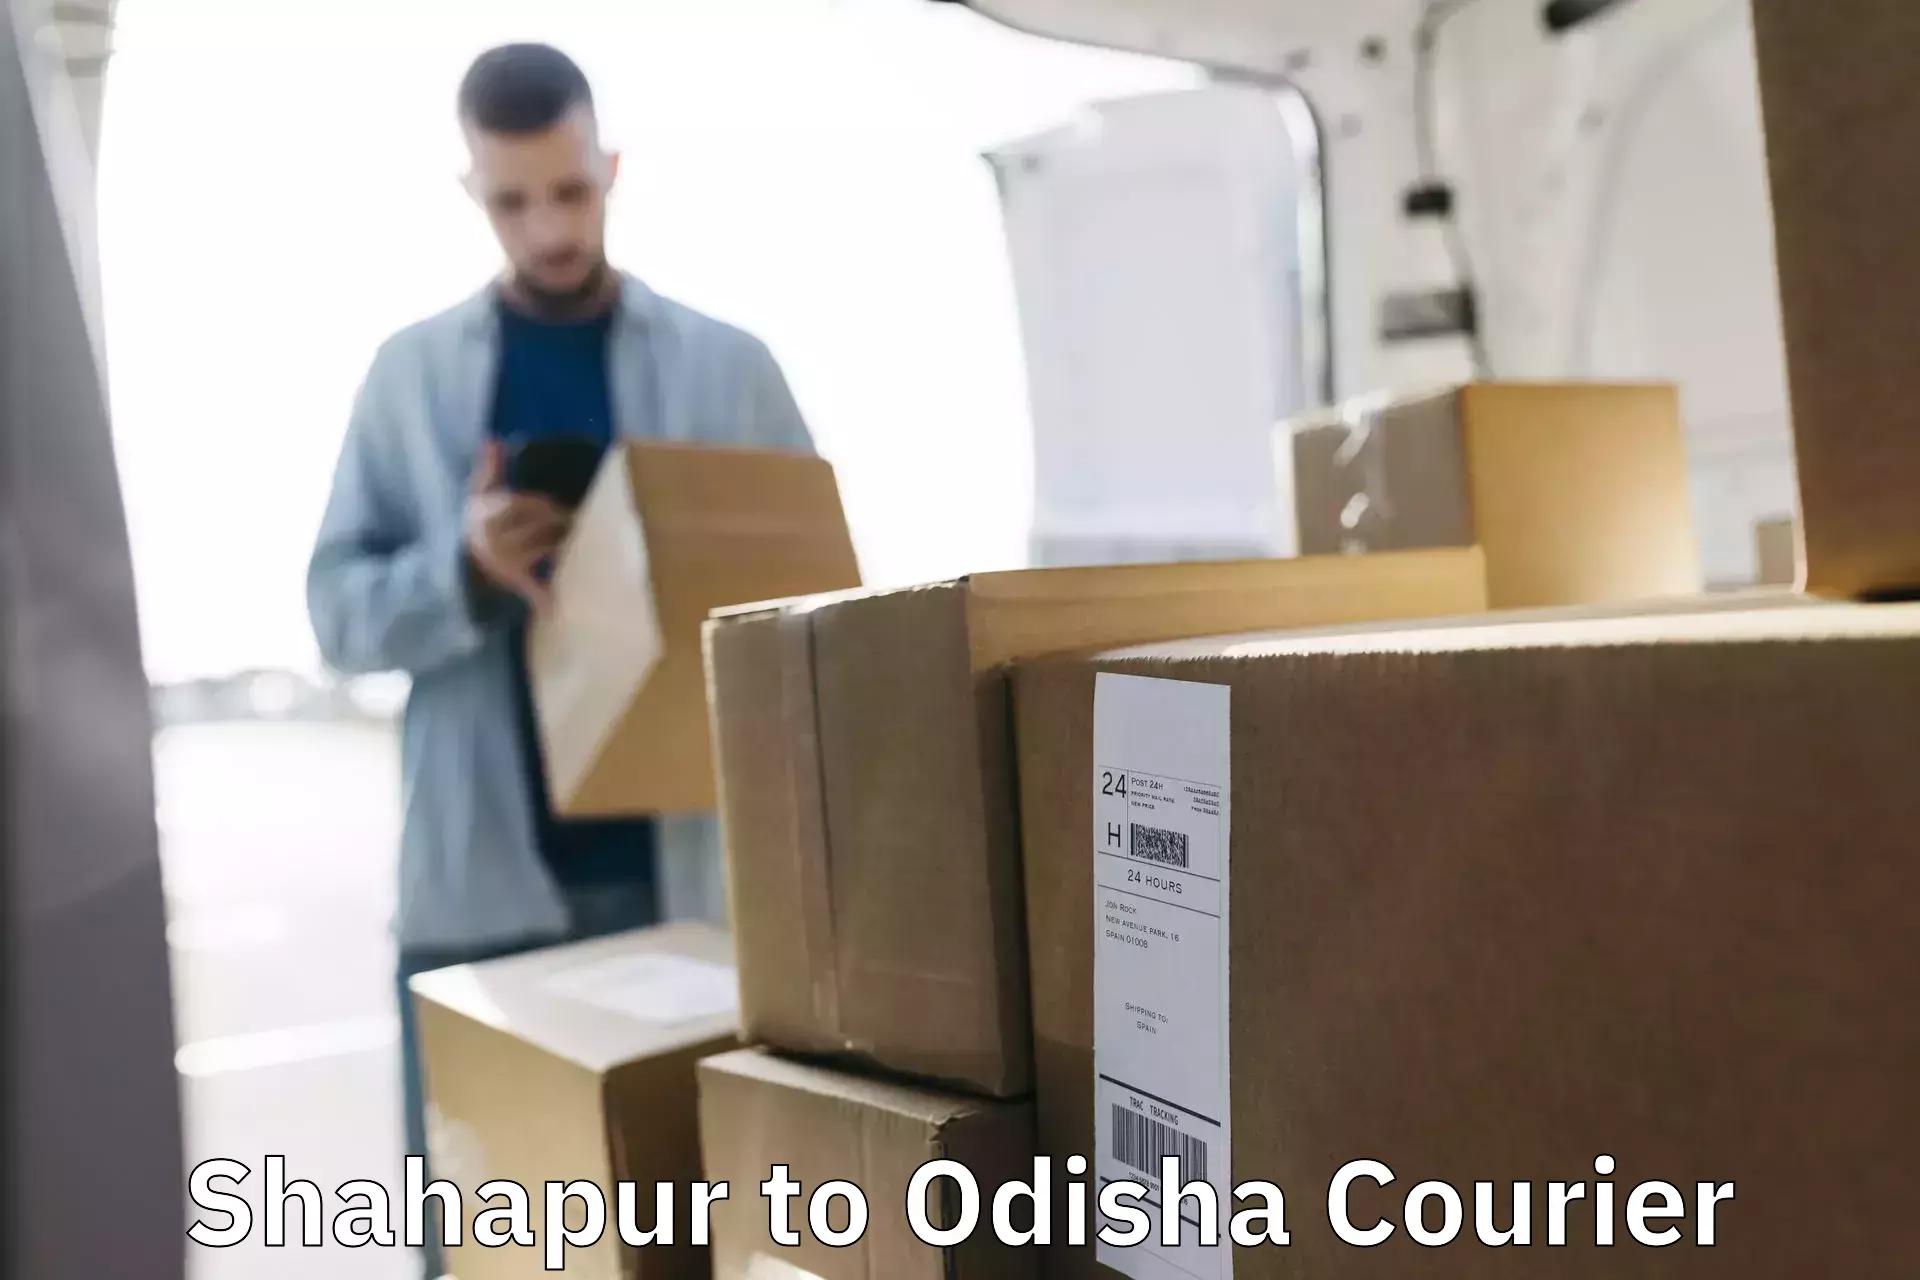 Efficient freight service Shahapur to Mahakalapada